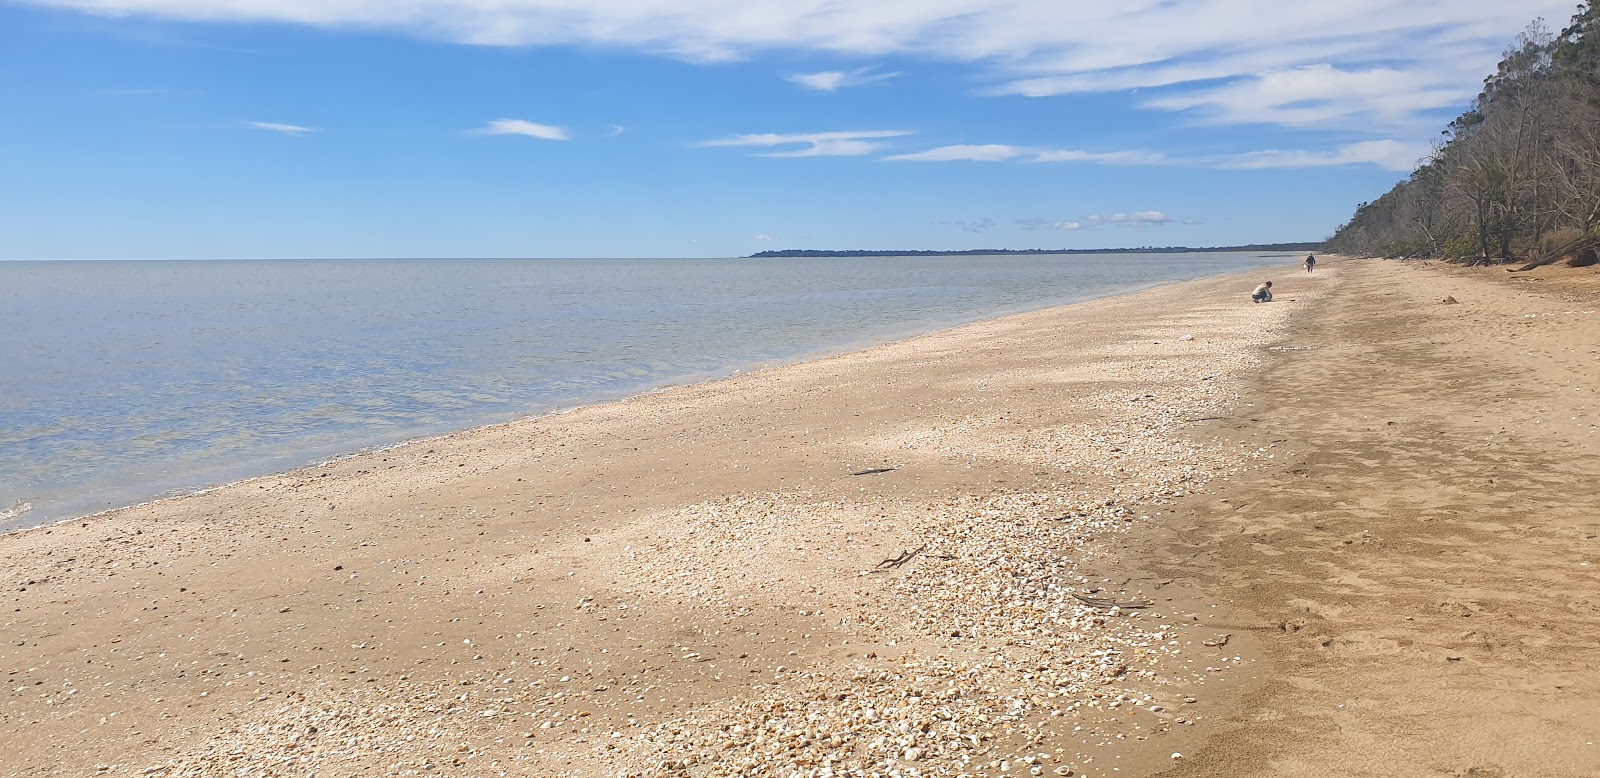 Foto de Brennan Beach com areia clara e seixos superfície